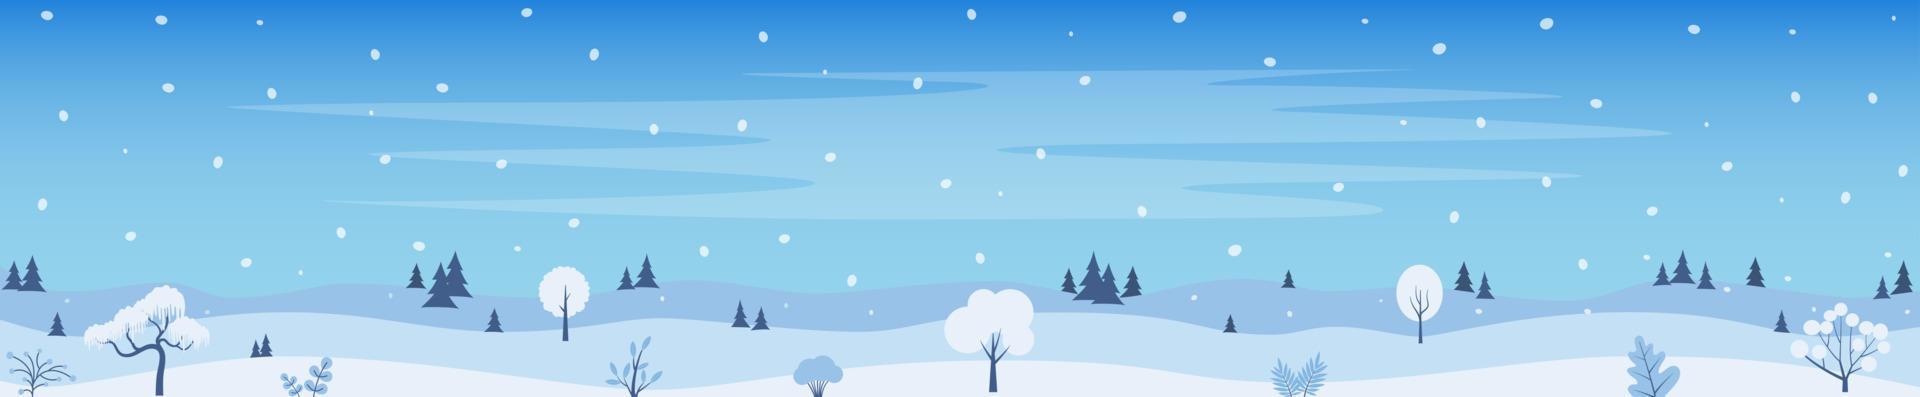 fondo de paisaje invernal, pinos nevados, bosques. plantilla de banner horizontal con fondo nevado de paisaje invernal. ilustración vectorial vector